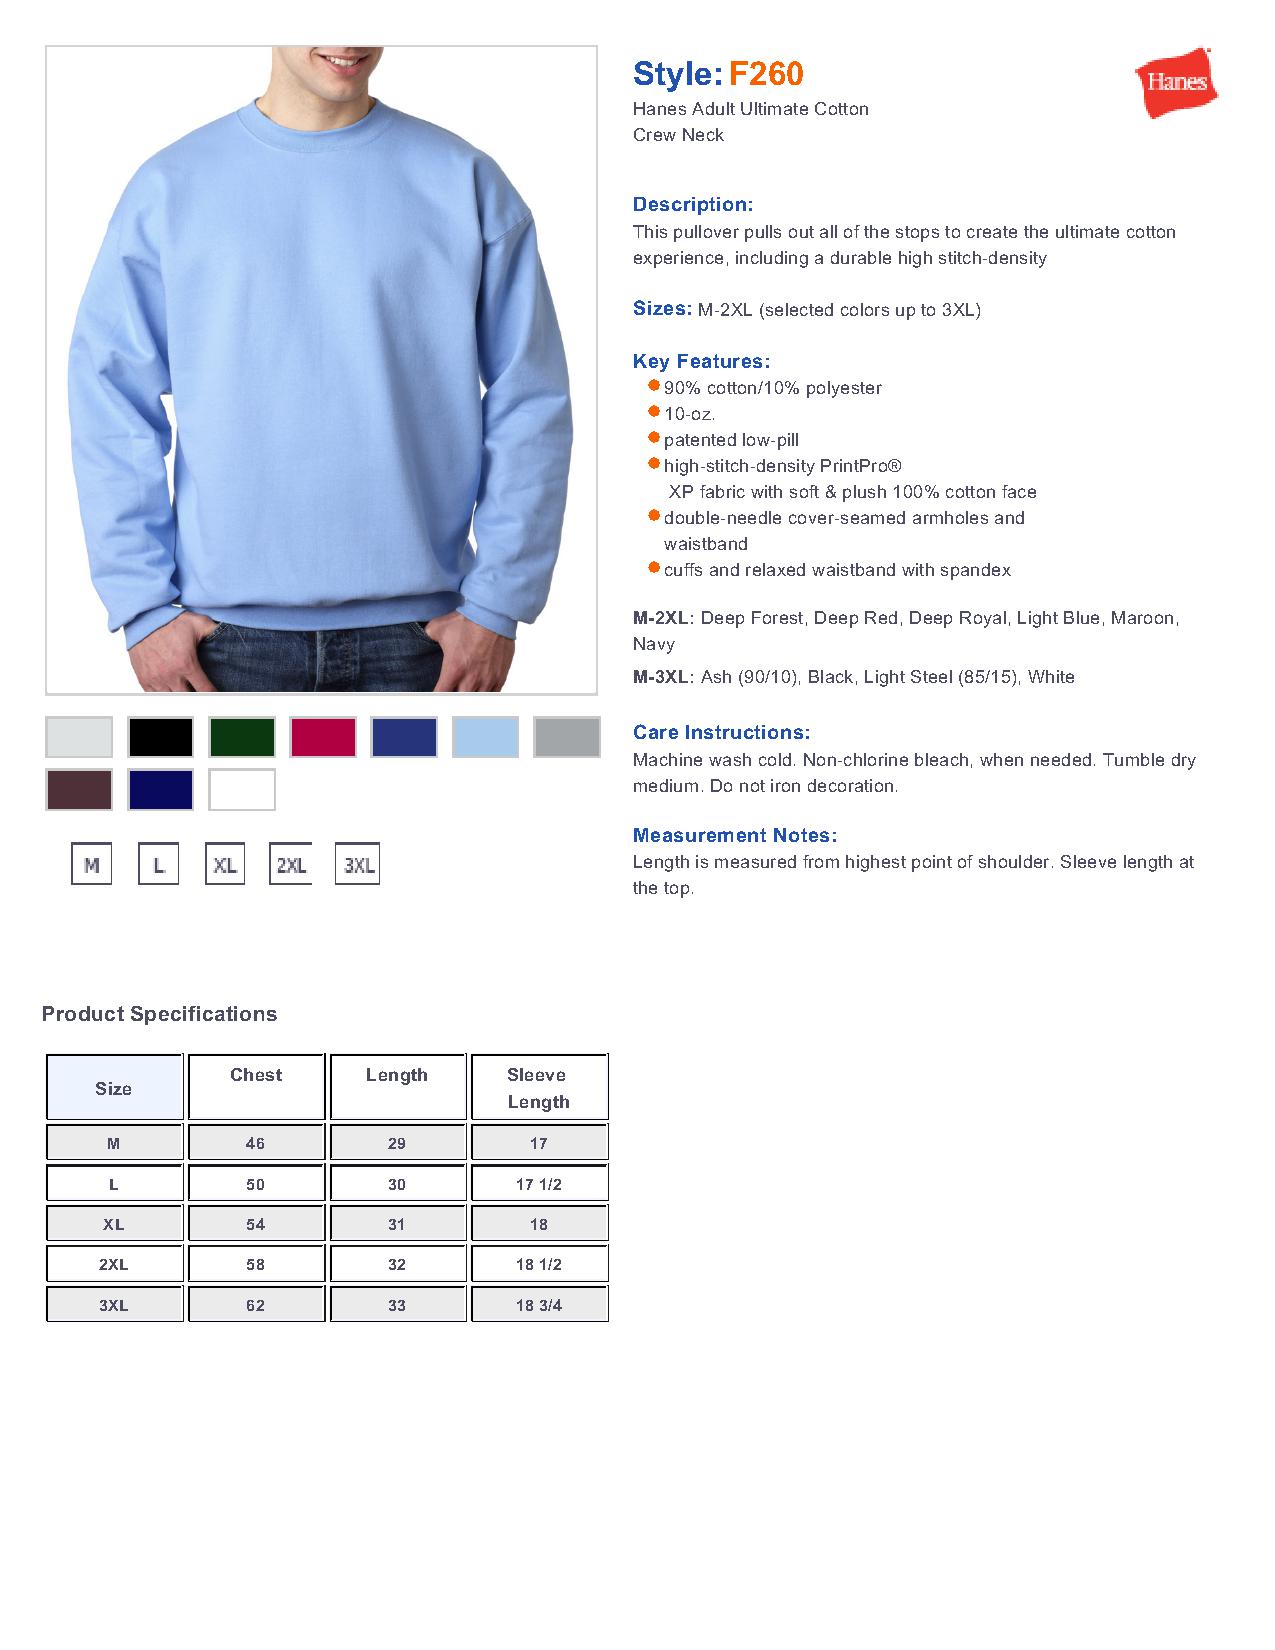 Gildan Crewneck Sweatshirt Size Chart